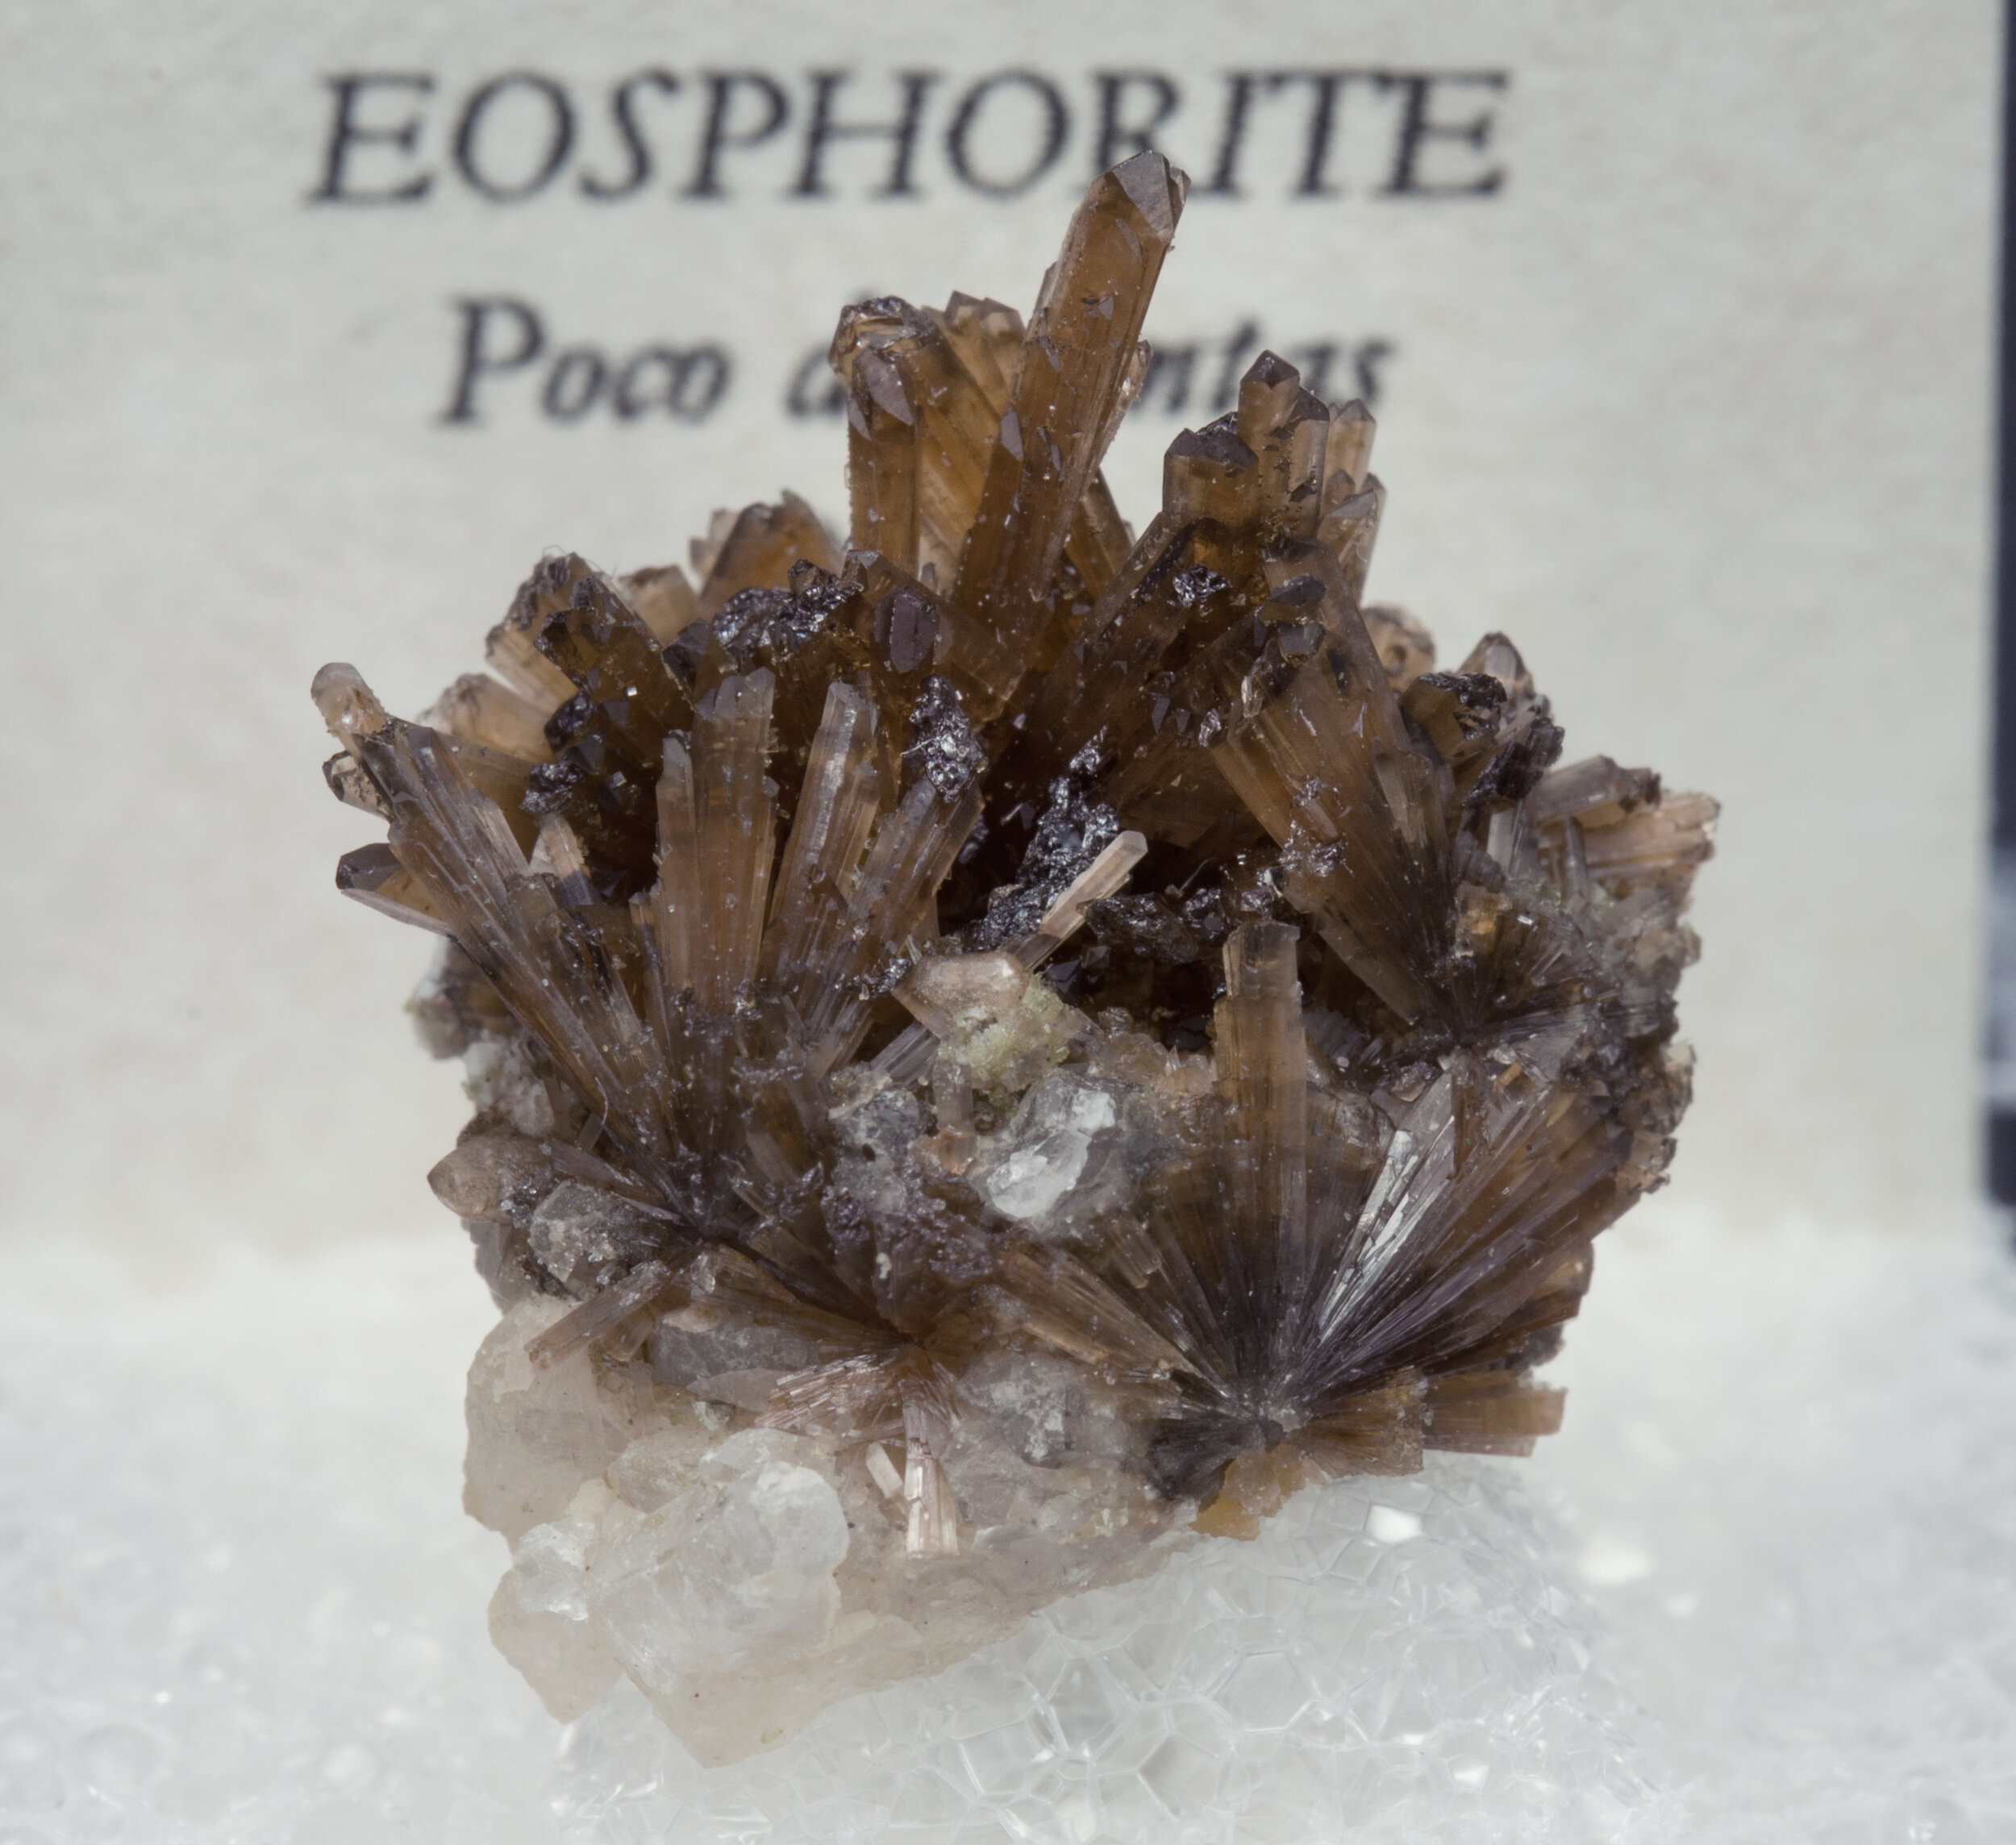 specimens/s_imagesAO0/Eosphorite-TZB13AO0f2.jpg